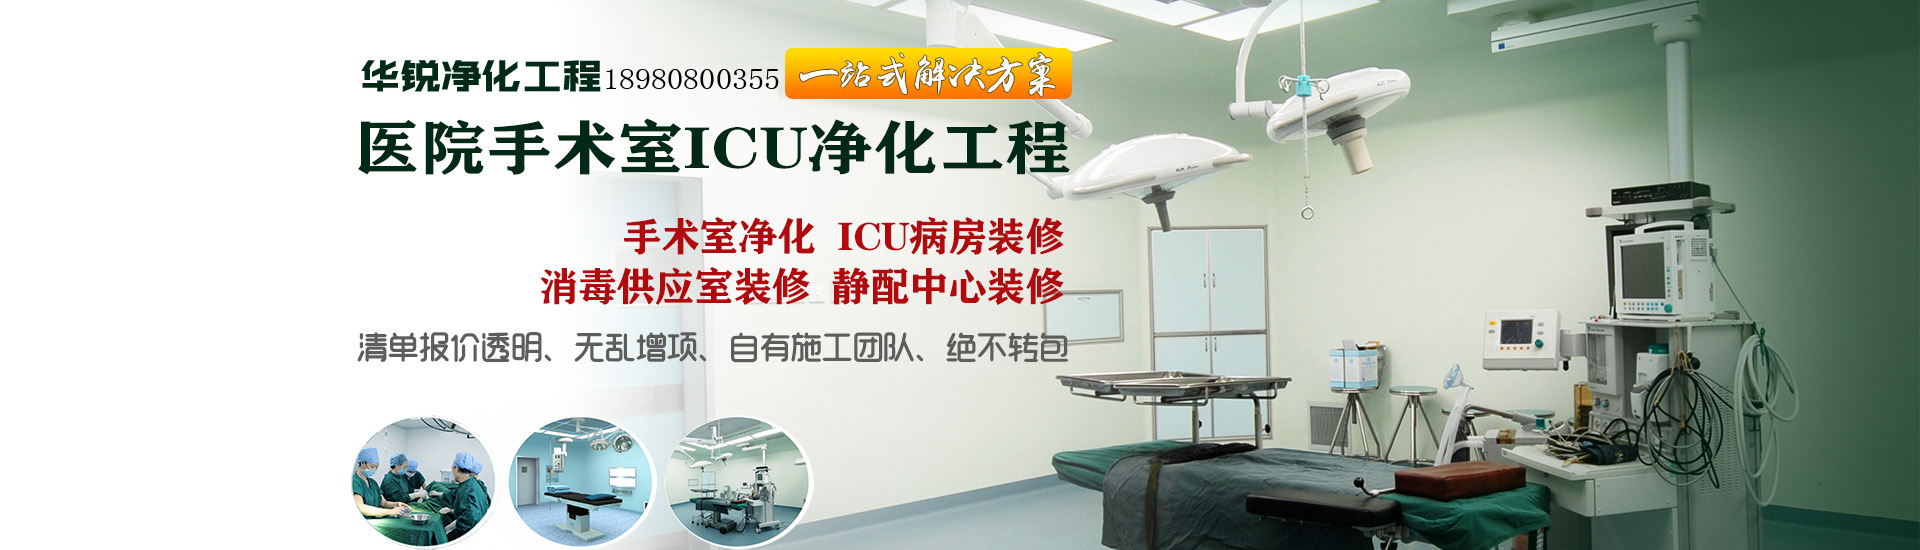 醫院手術室ICU凈化工程banner